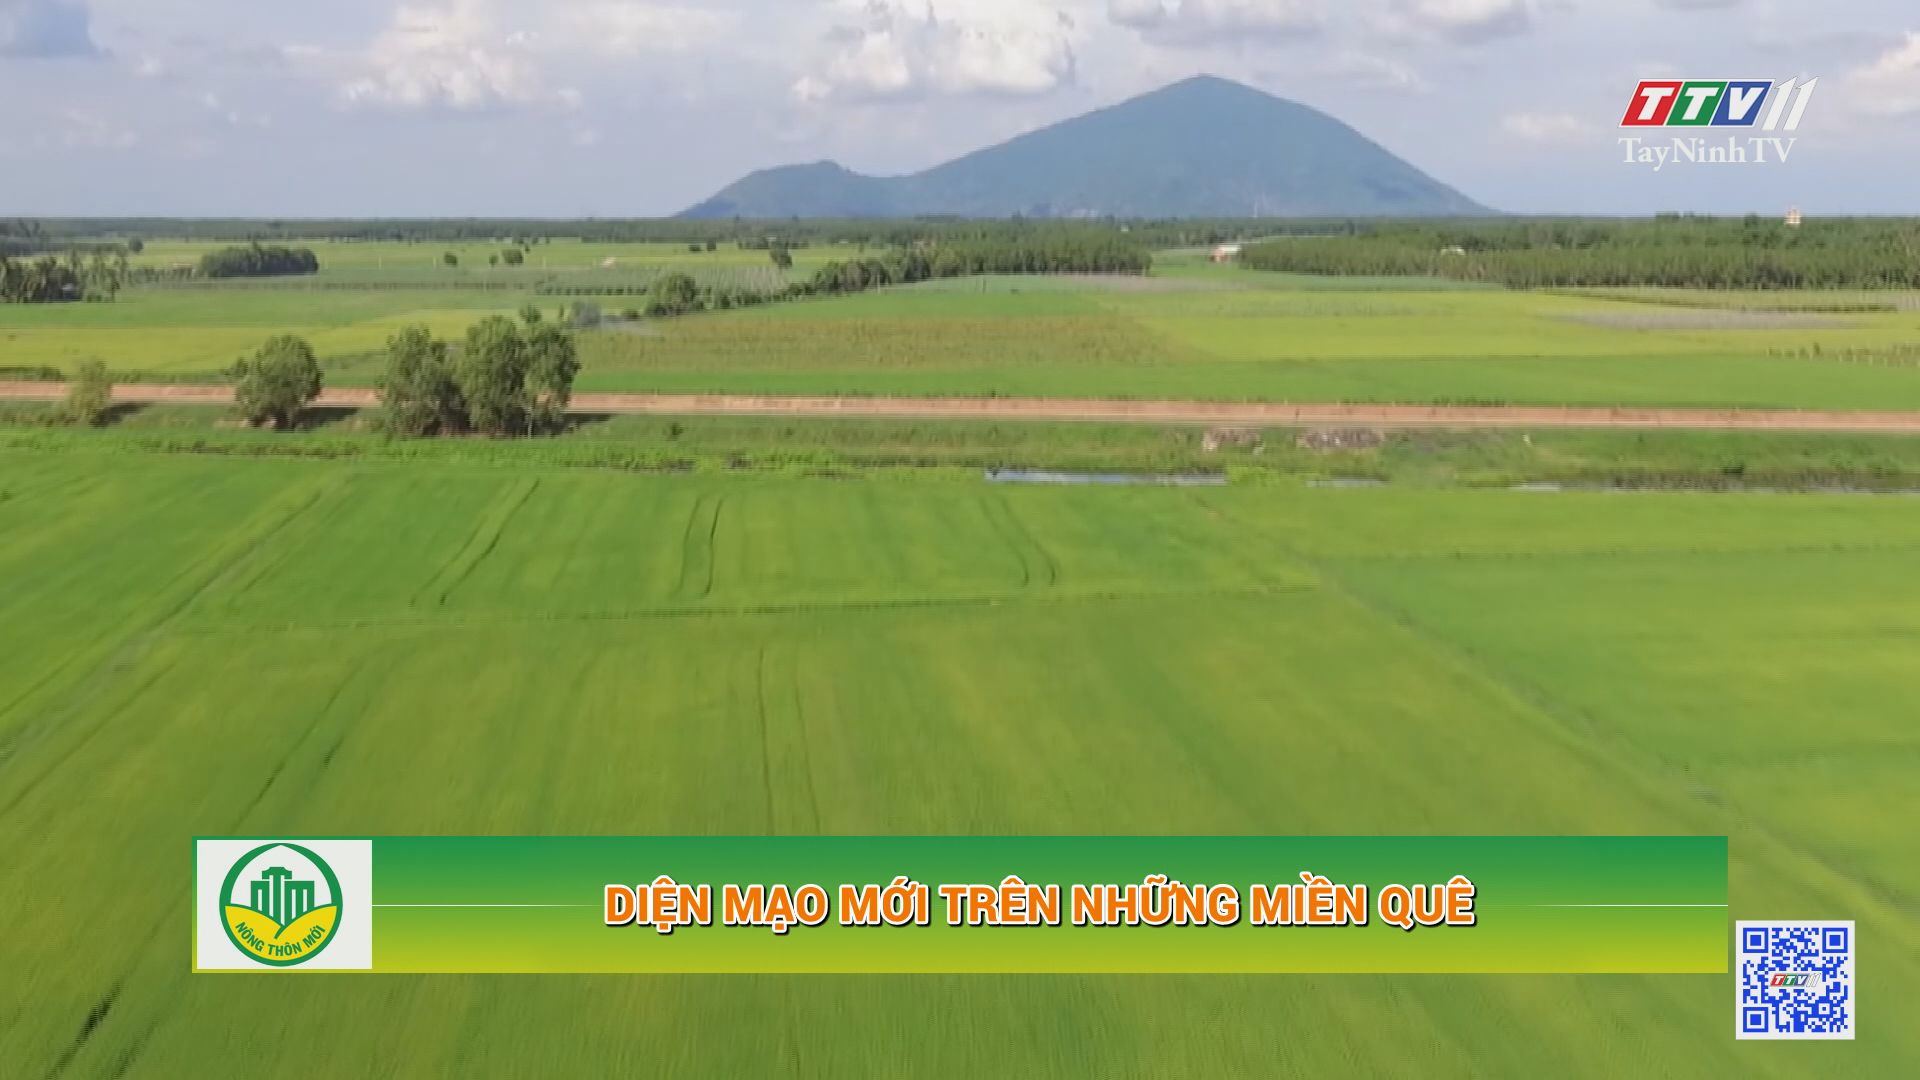 Diện mạo mới trên những miền quê | Tây Ninh xây dựng nông thôn mới | TayNinhTV